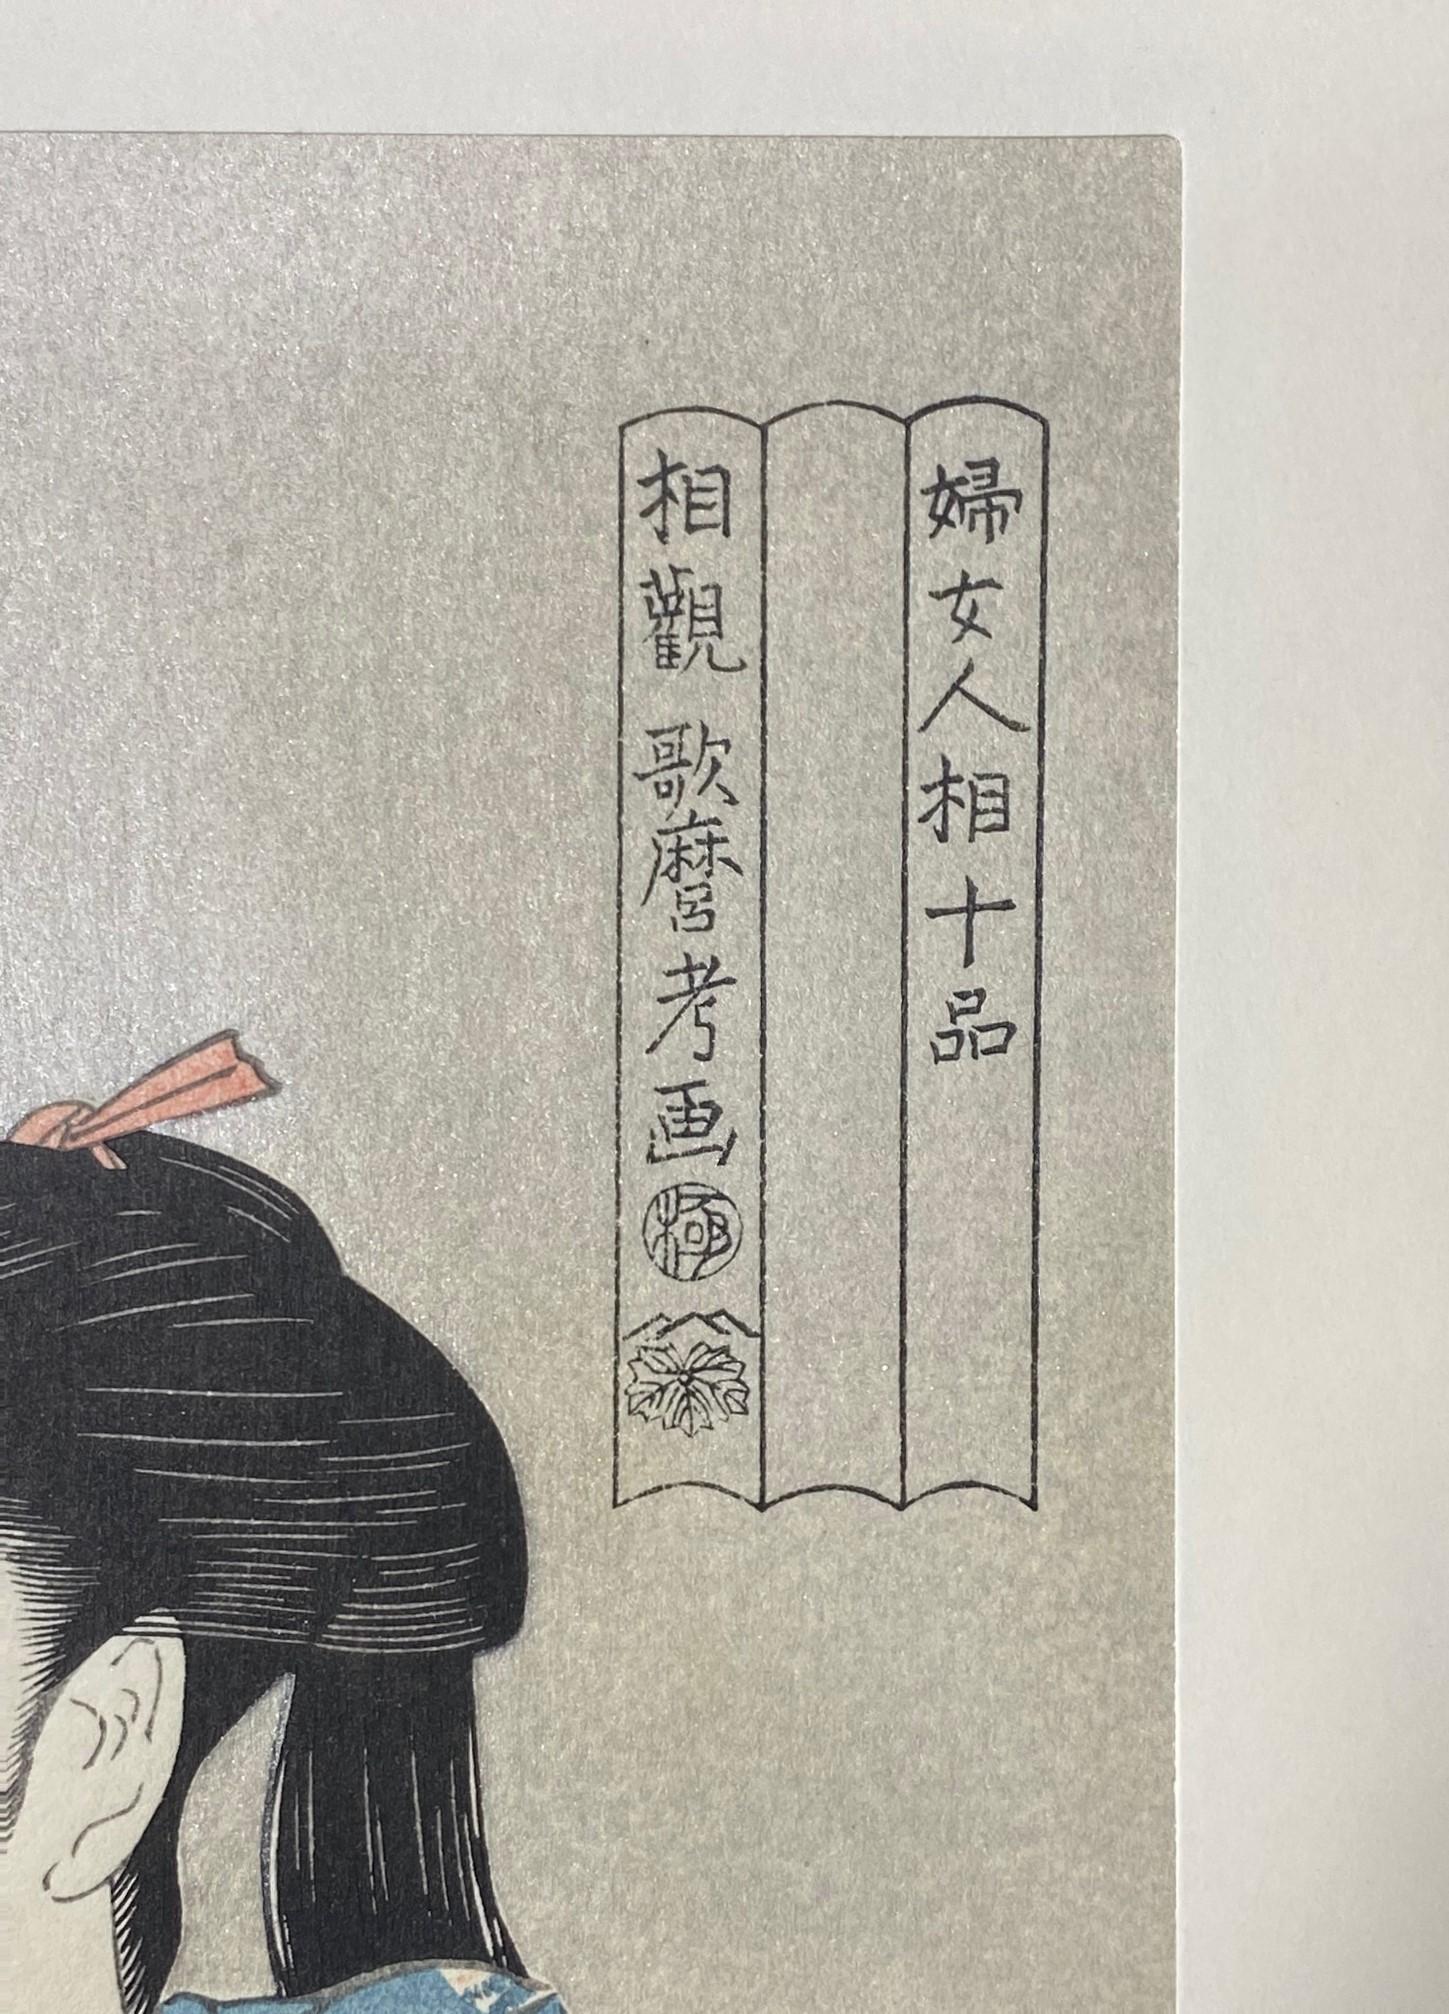 20th Century Kitagawa Utamaro Japanese Woodblock Print Edo Semi-Nude Woman Smoking Opium Pipe For Sale